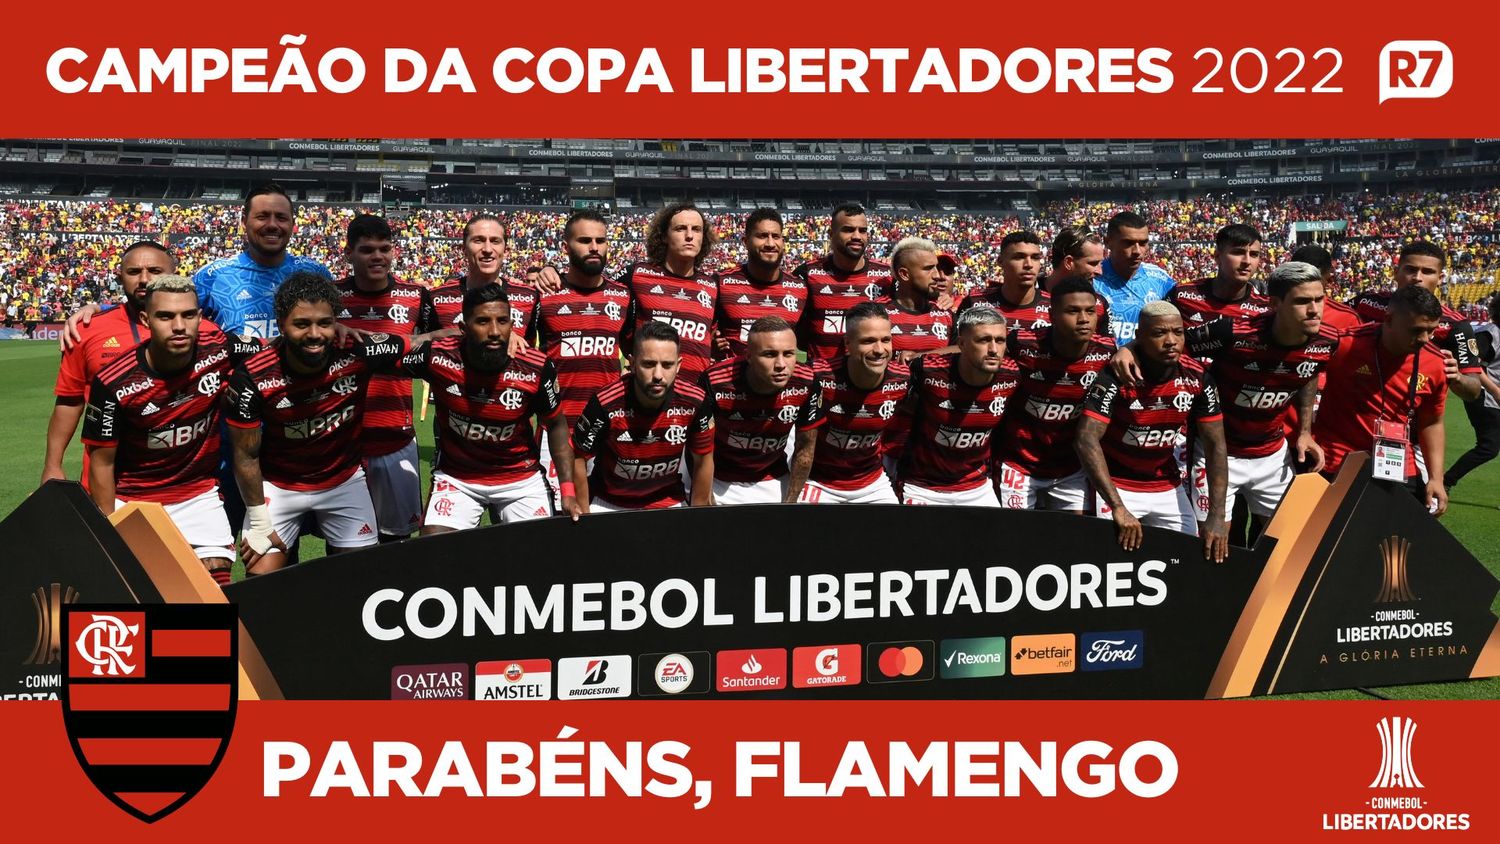 Baixe o pôster do Flamengo, campeão brasileiro de 2020 - Placar - O futebol  sem barreiras para você